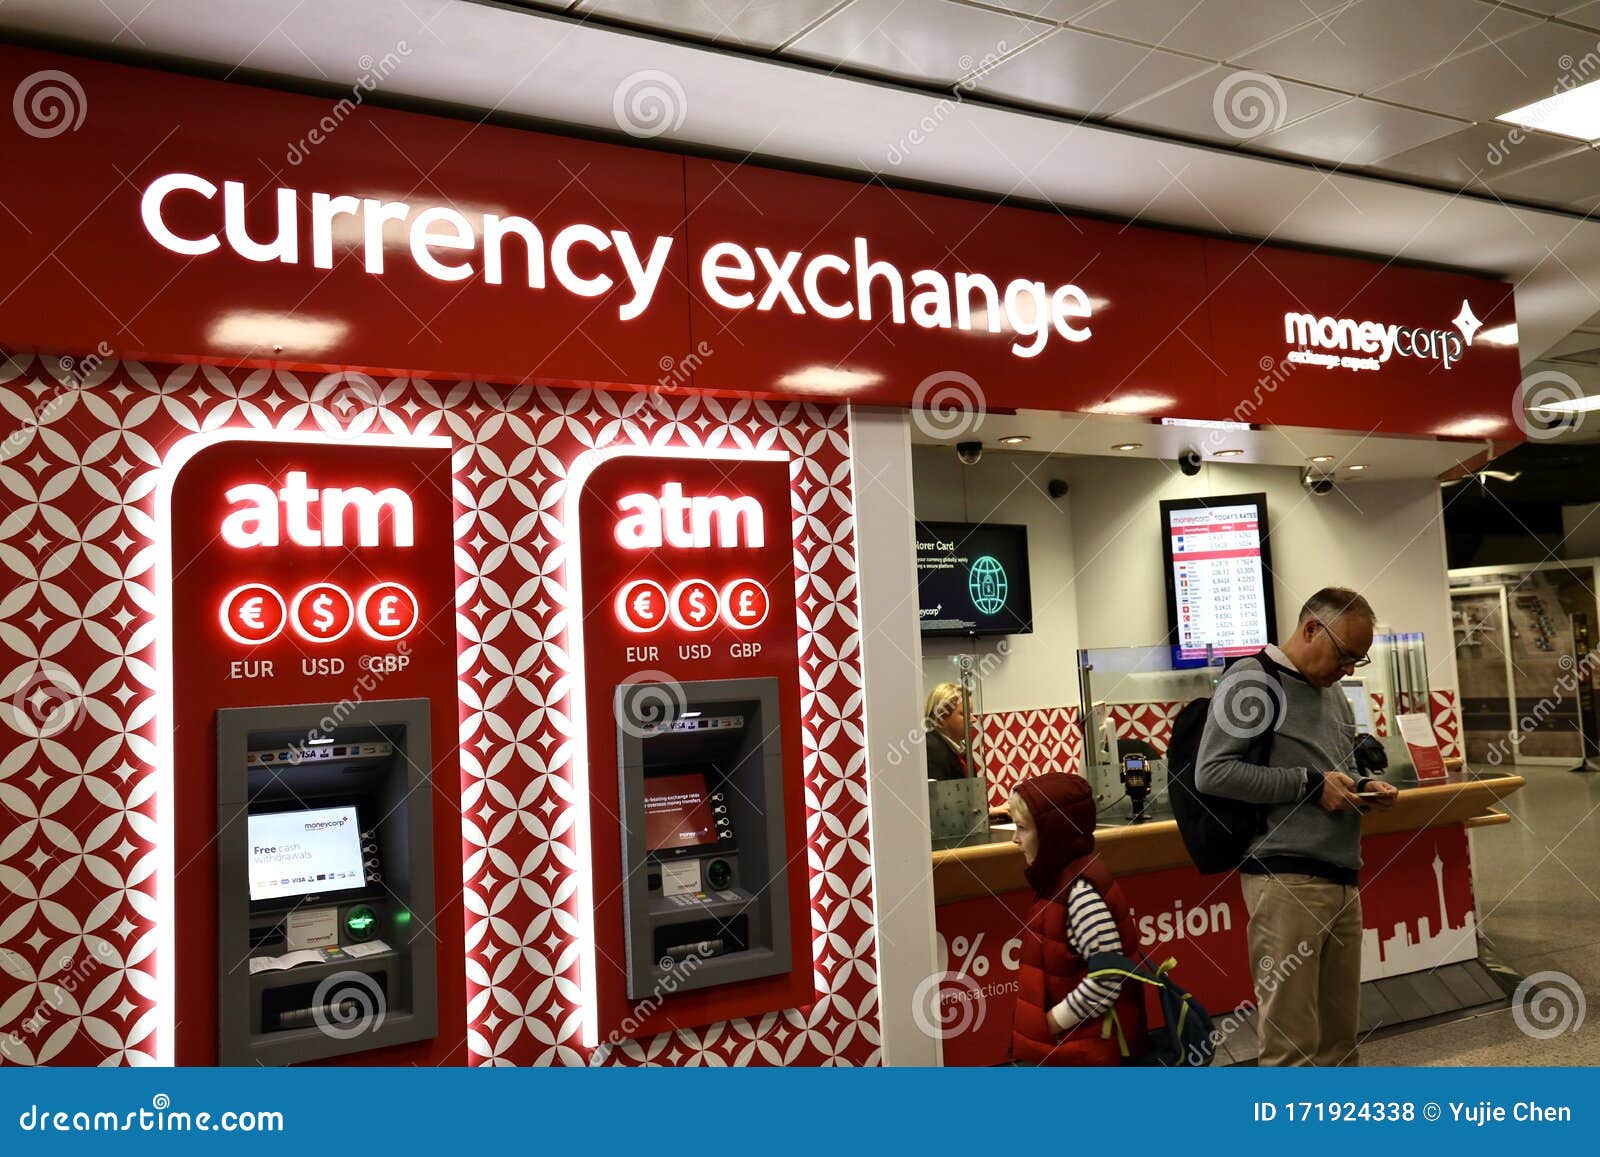 Money exchange in delhi airport